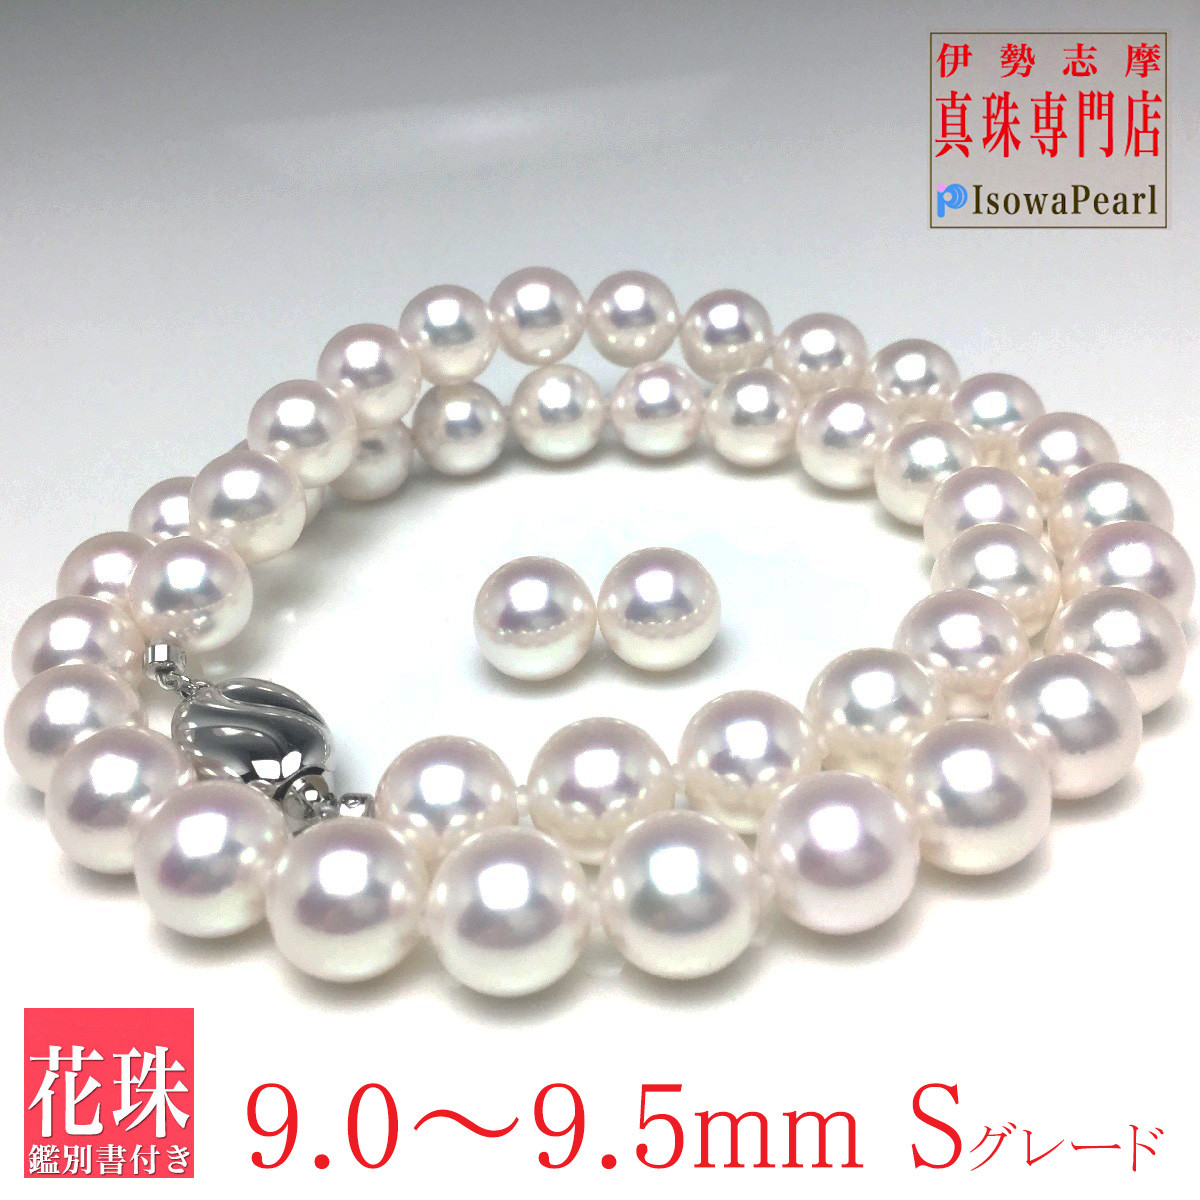 本真珠ネックレス 日本産花珠オーロラパール ロング  80cm ベビーパール真珠の色白虹色の光を映し出す